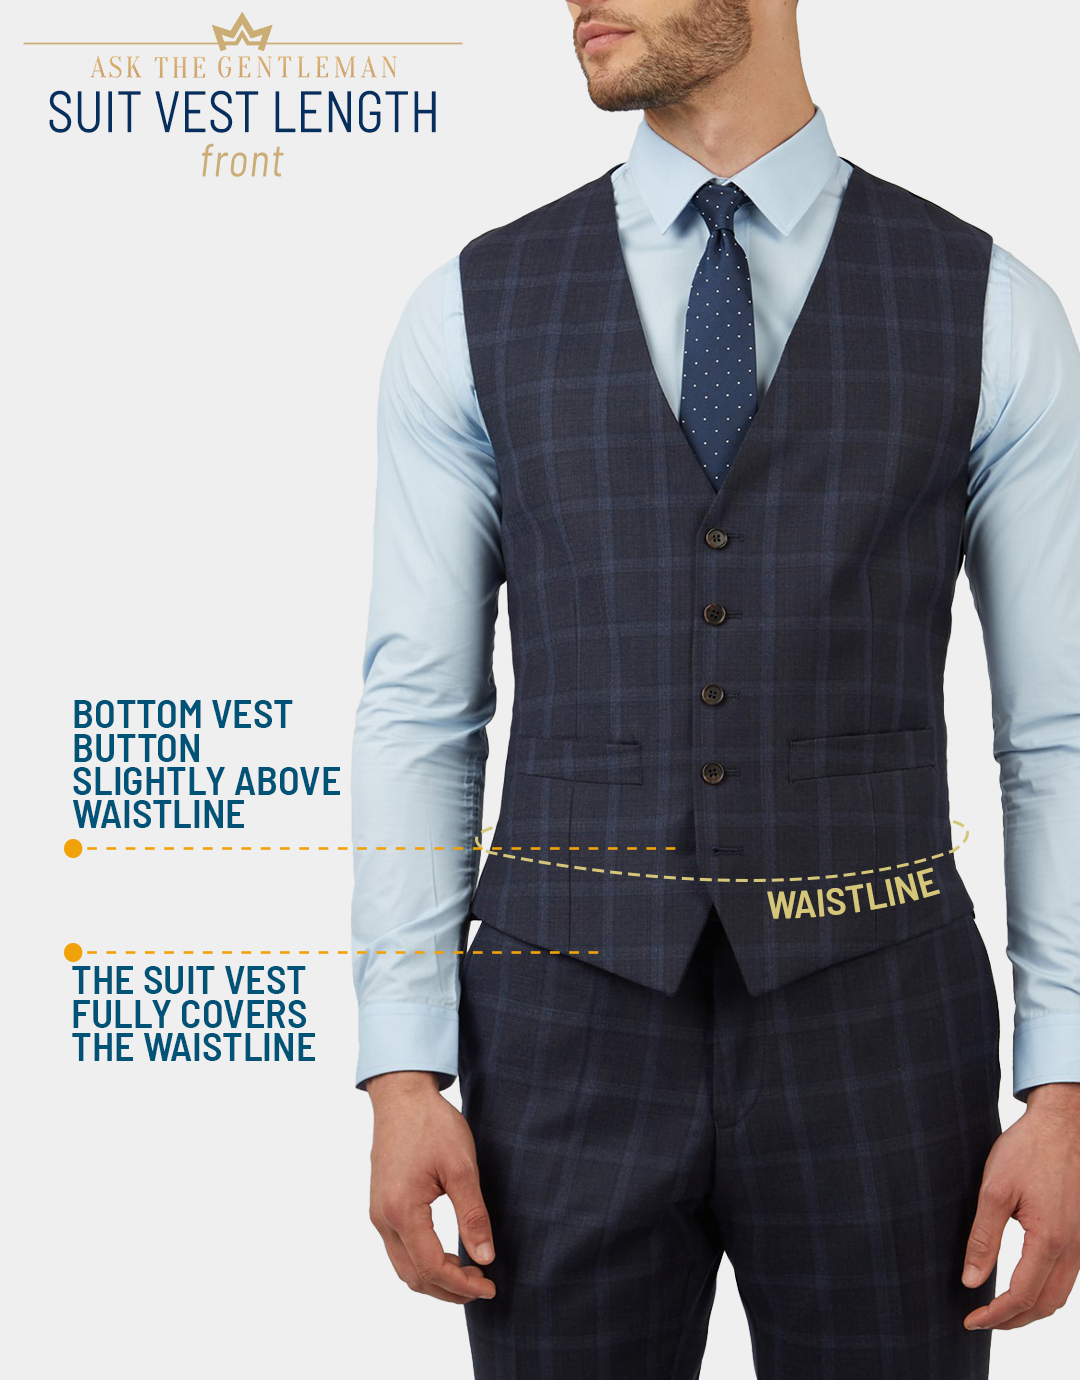 Proper suit vest front length